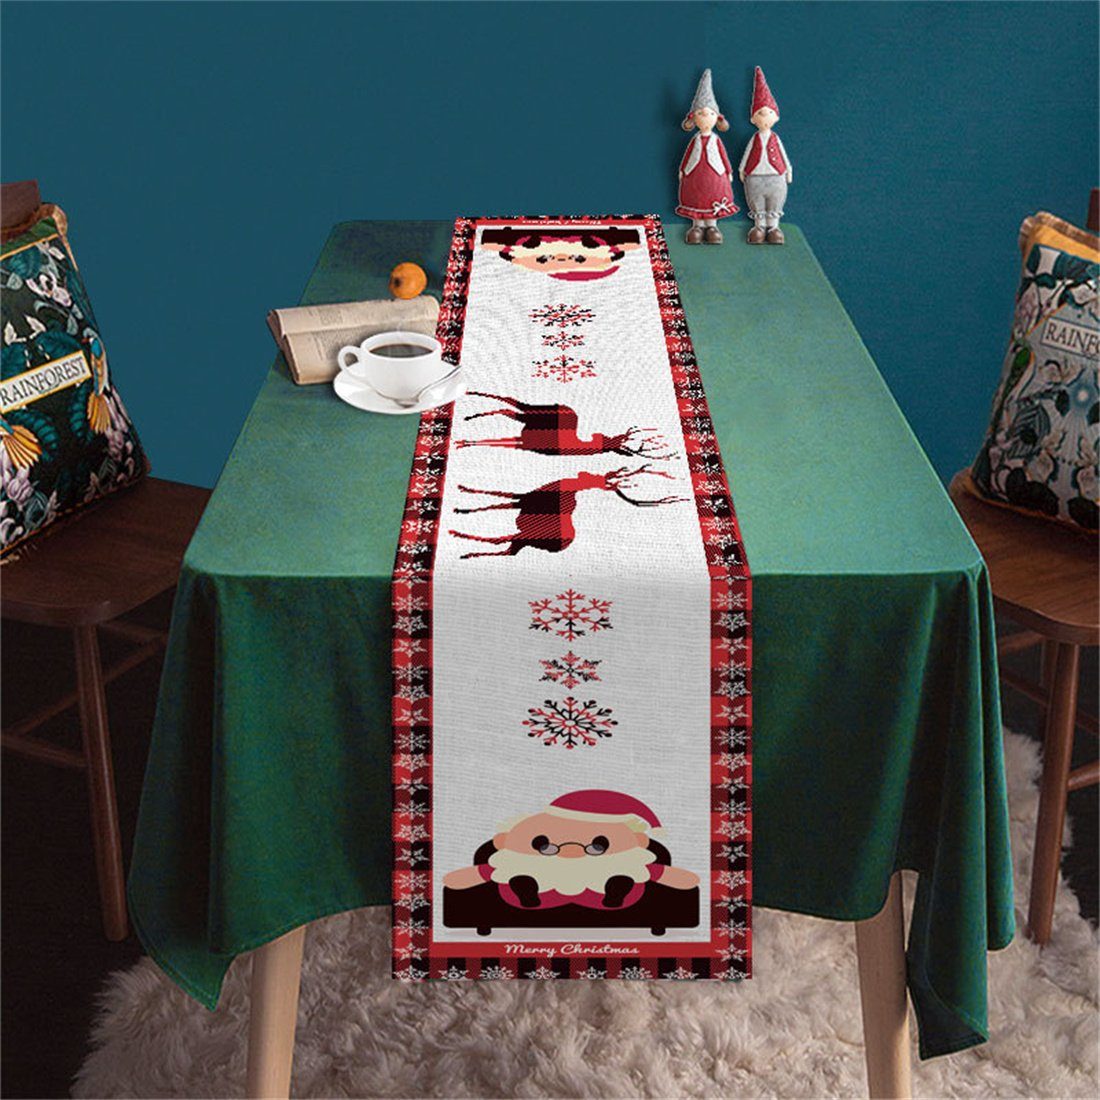 Christmas Tischläufer Print Tischdekoration,Weihnachtsmann Tischläufer Fawn DÖRÖY